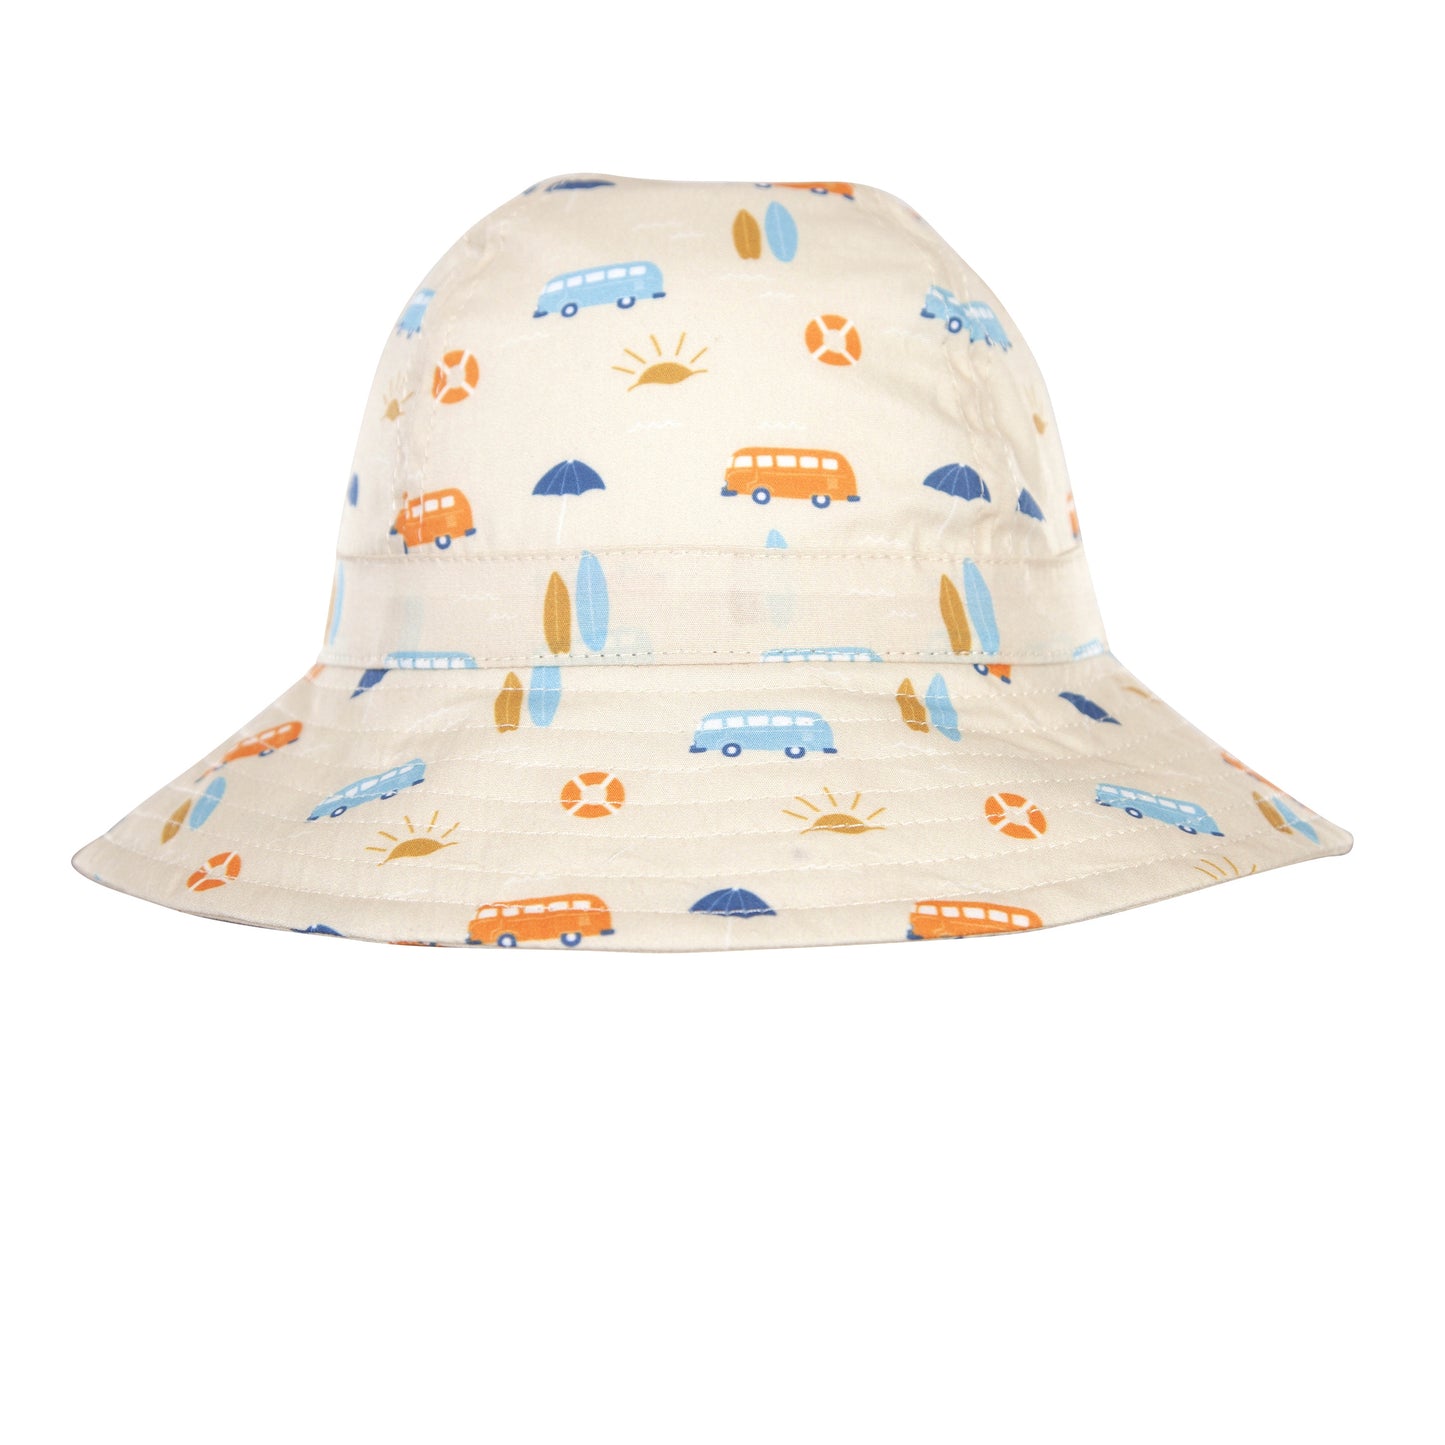 Sunrise Surfer Infant Hat